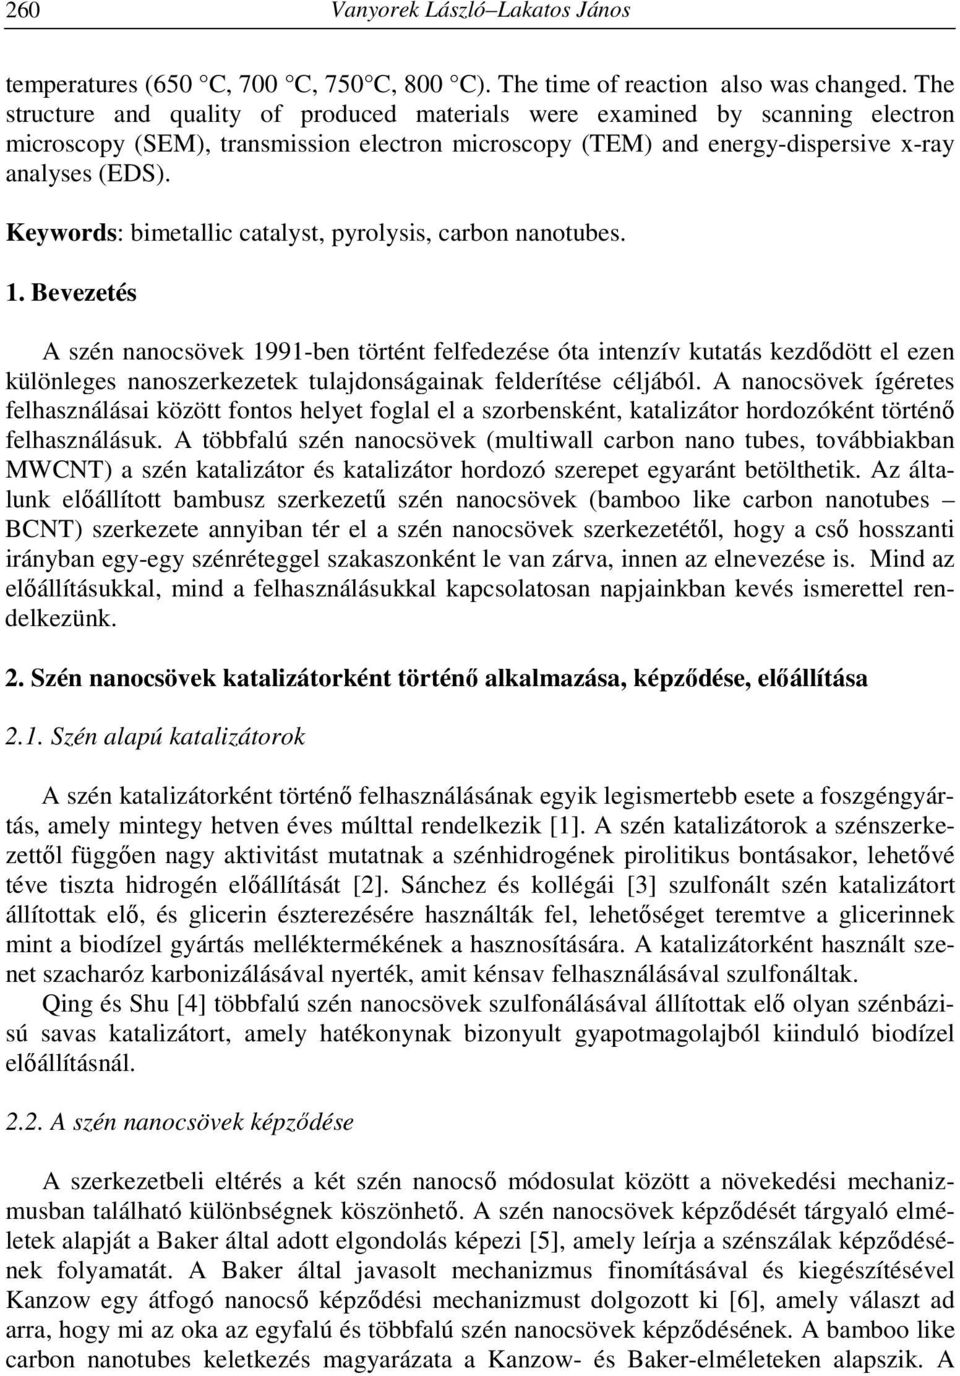 Keywords: bimetallic catalyst, pyrolysis, carbon nanotubes. 1.